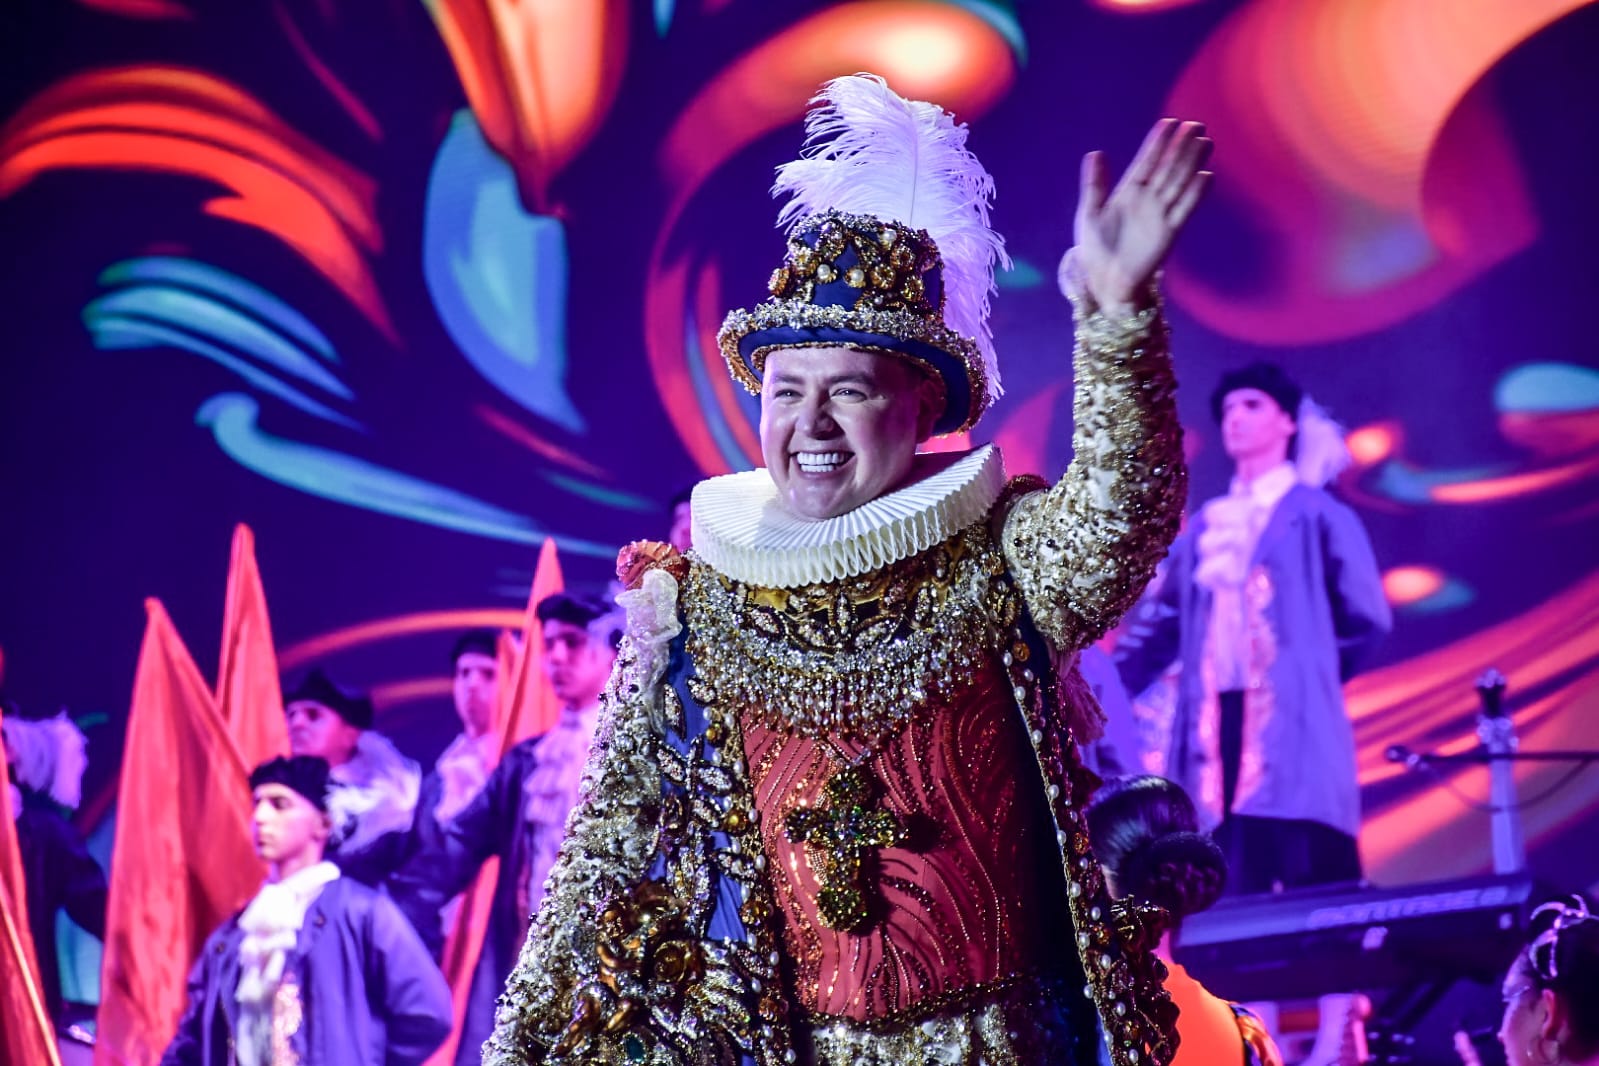 Asciende a su trono Héctor II Rey de la Alegría del Carnaval Internacional de Mazatlán